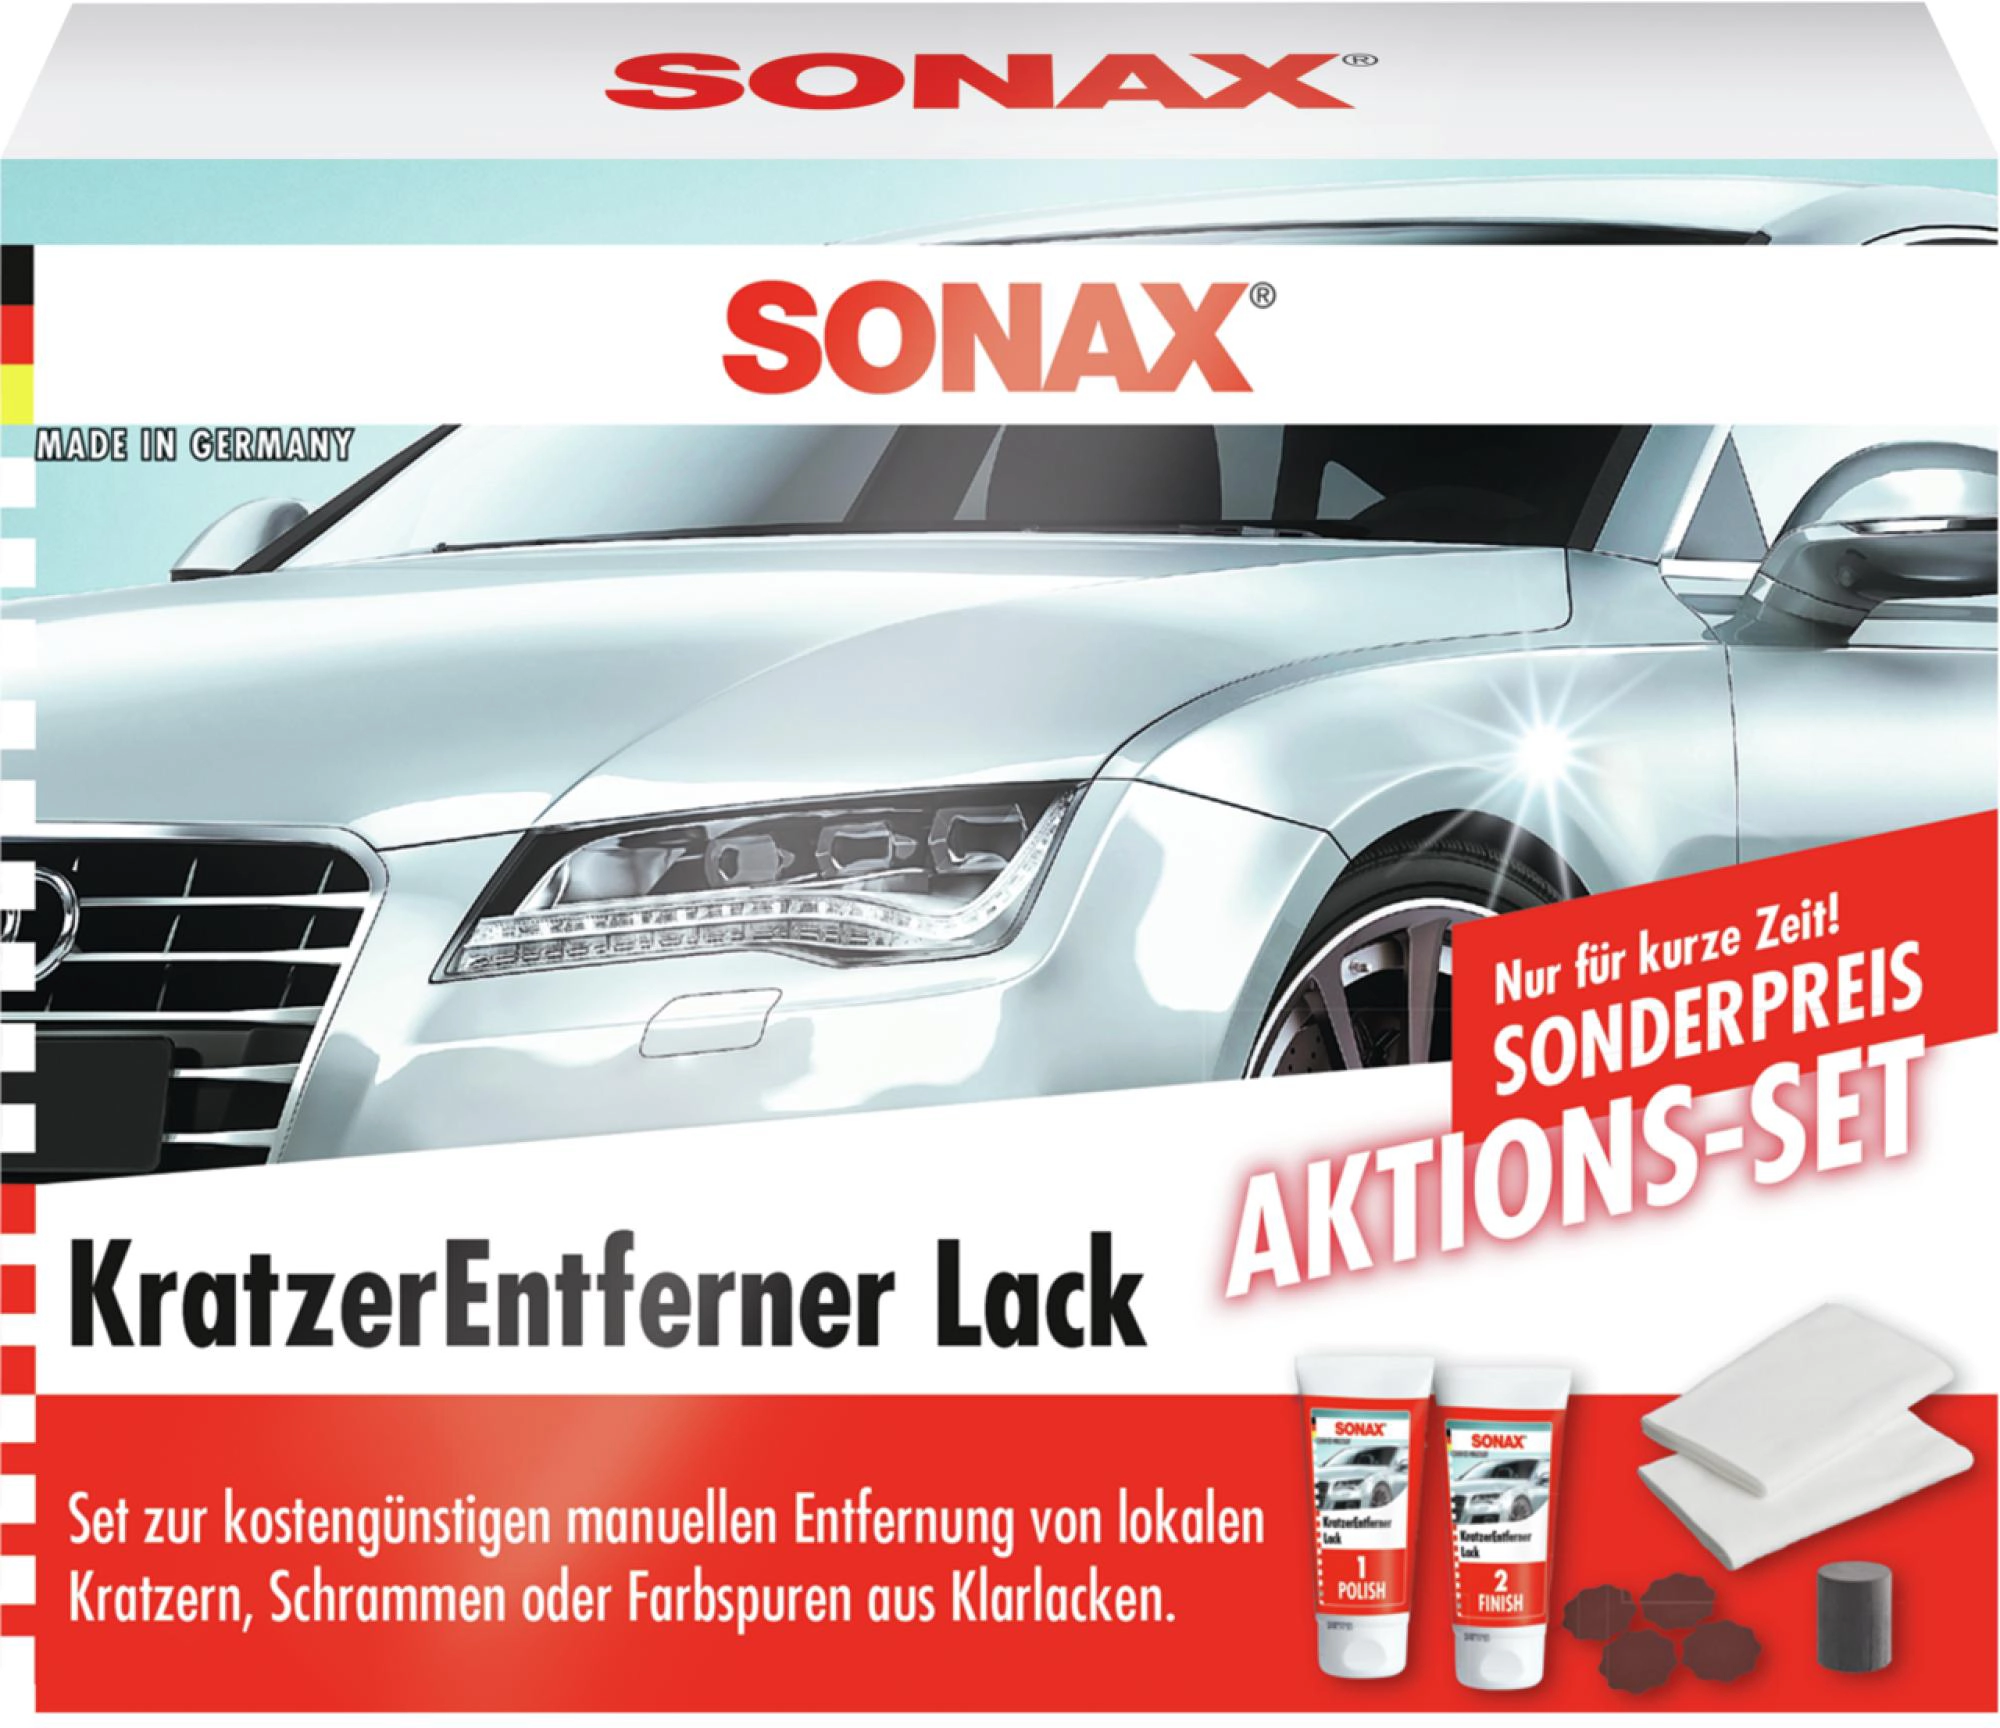 Sonax Kratzer Entferner Lack Aktionsset 2 x 25 ml kaufen bei OBI